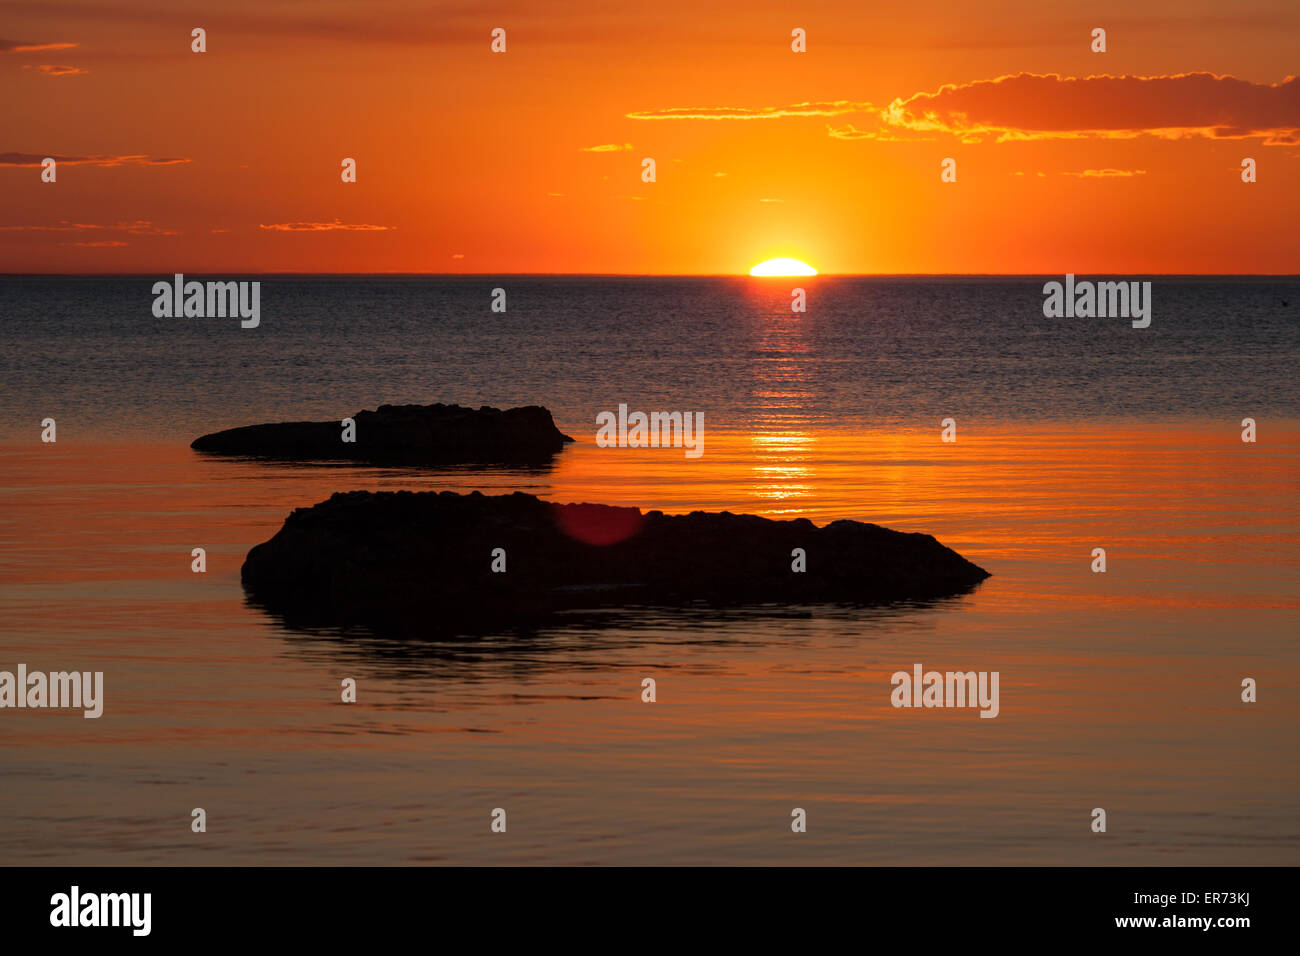 Lebendige orange Sonnenuntergang über dem Wasser, mit Rock-Silhouetten. Stockfoto